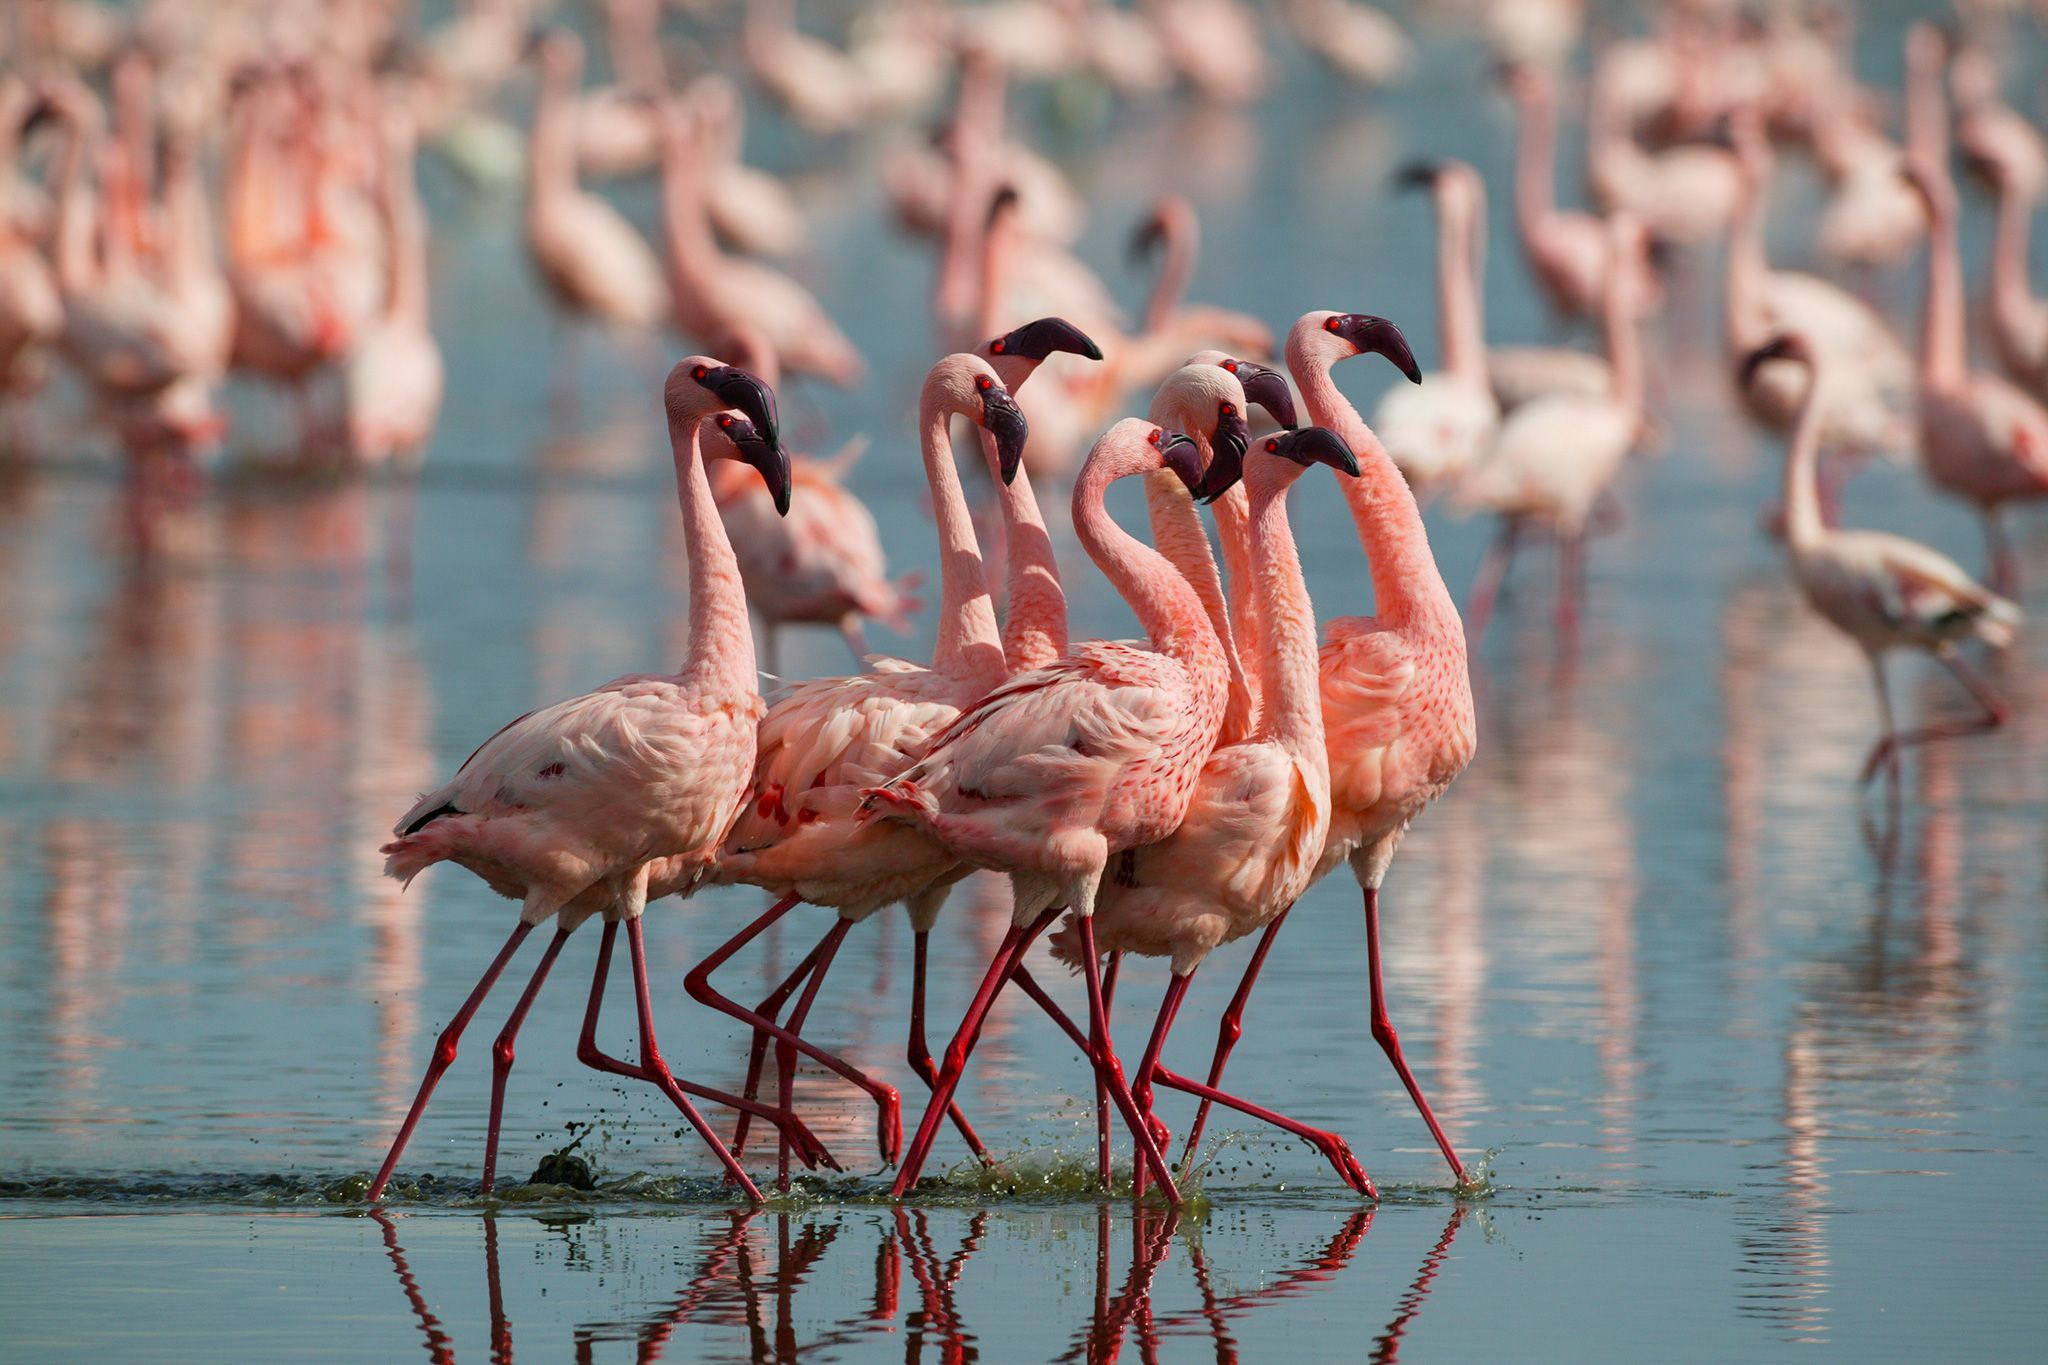 draadloos vandaag Spaans Hoe rozer de flamingo hoe agressiever, blijkt uit onderzoek